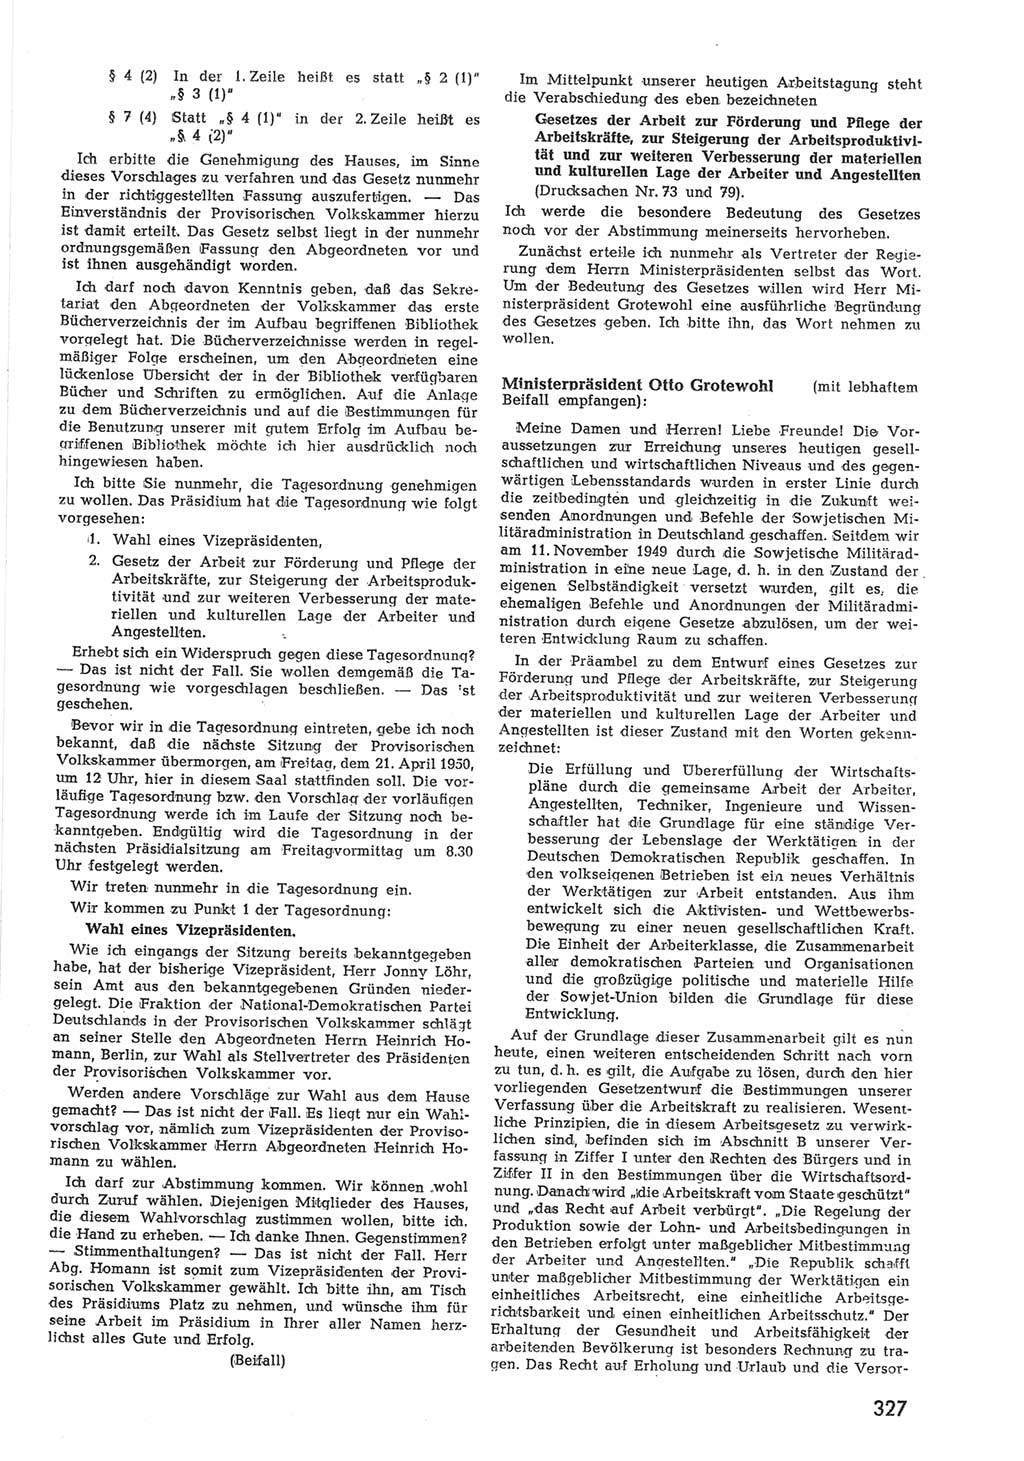 Provisorische Volkskammer (VK) der Deutschen Demokratischen Republik (DDR) 1949-1950, Dokument 341 (Prov. VK DDR 1949-1950, Dok. 341)